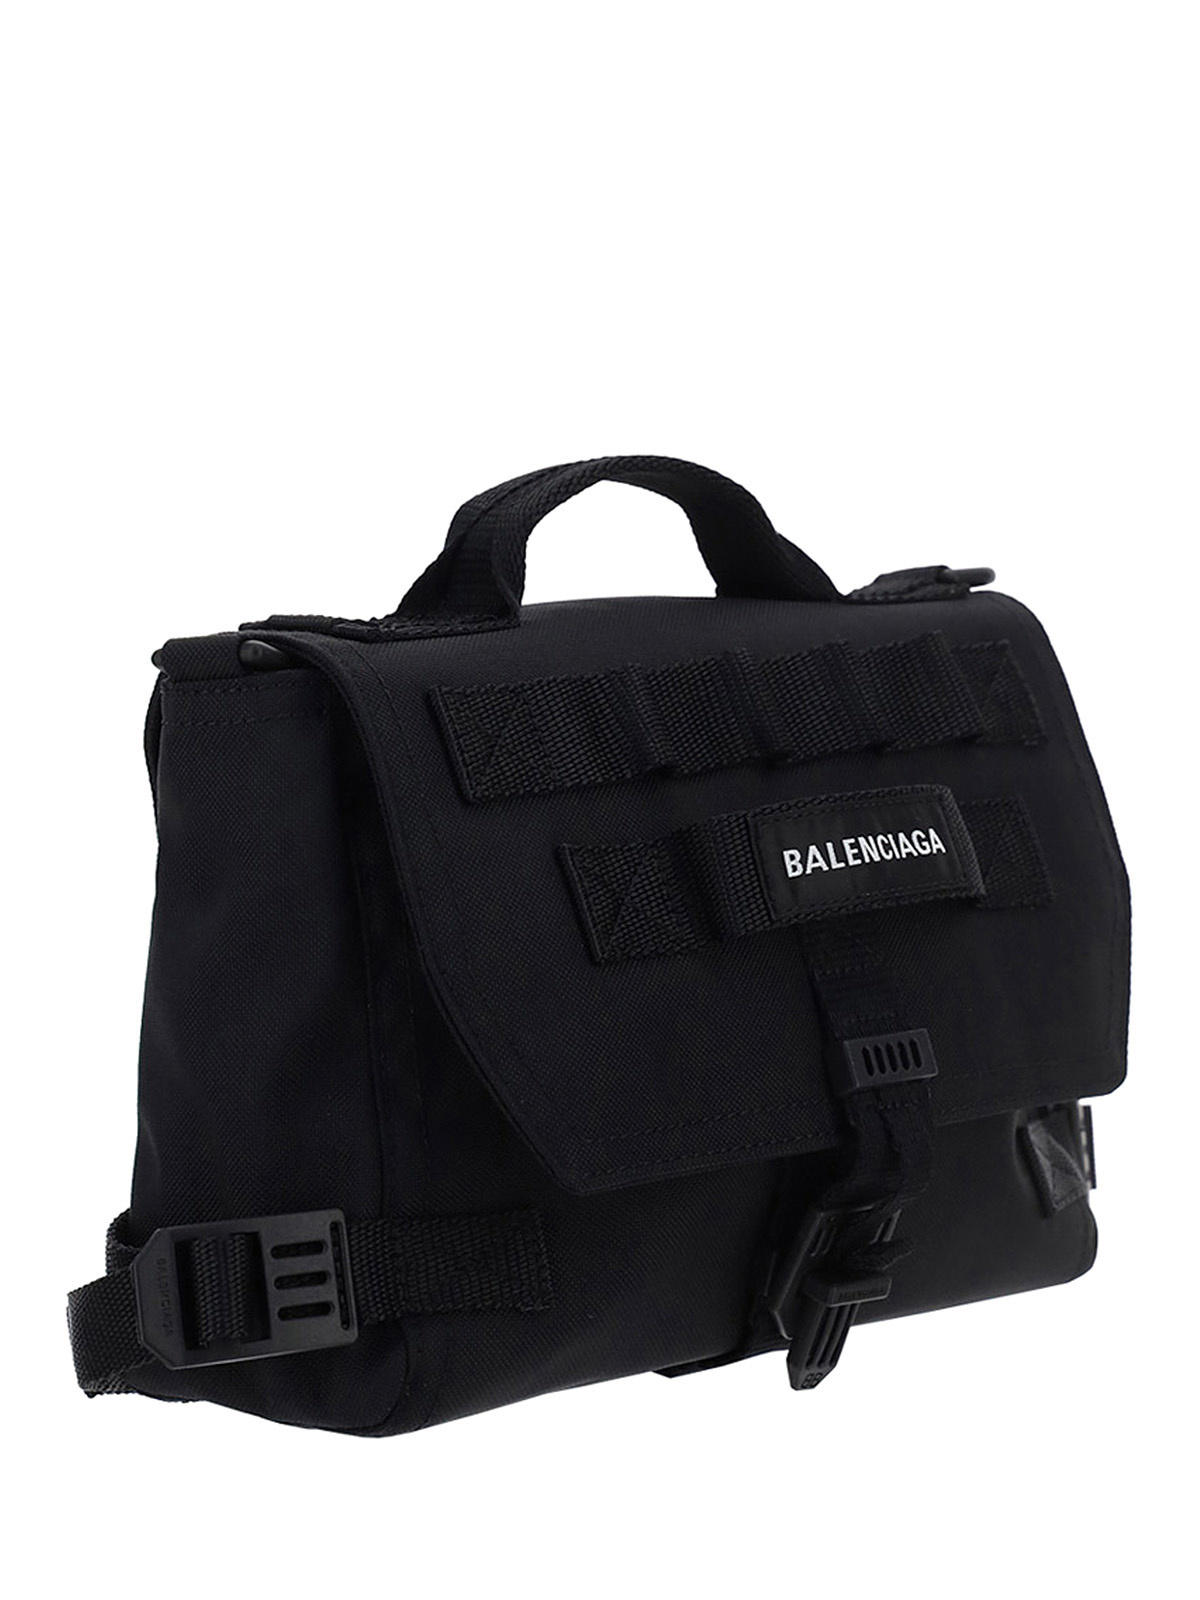 Laptop bags & briefcases Balenciaga - Army messenger bag 